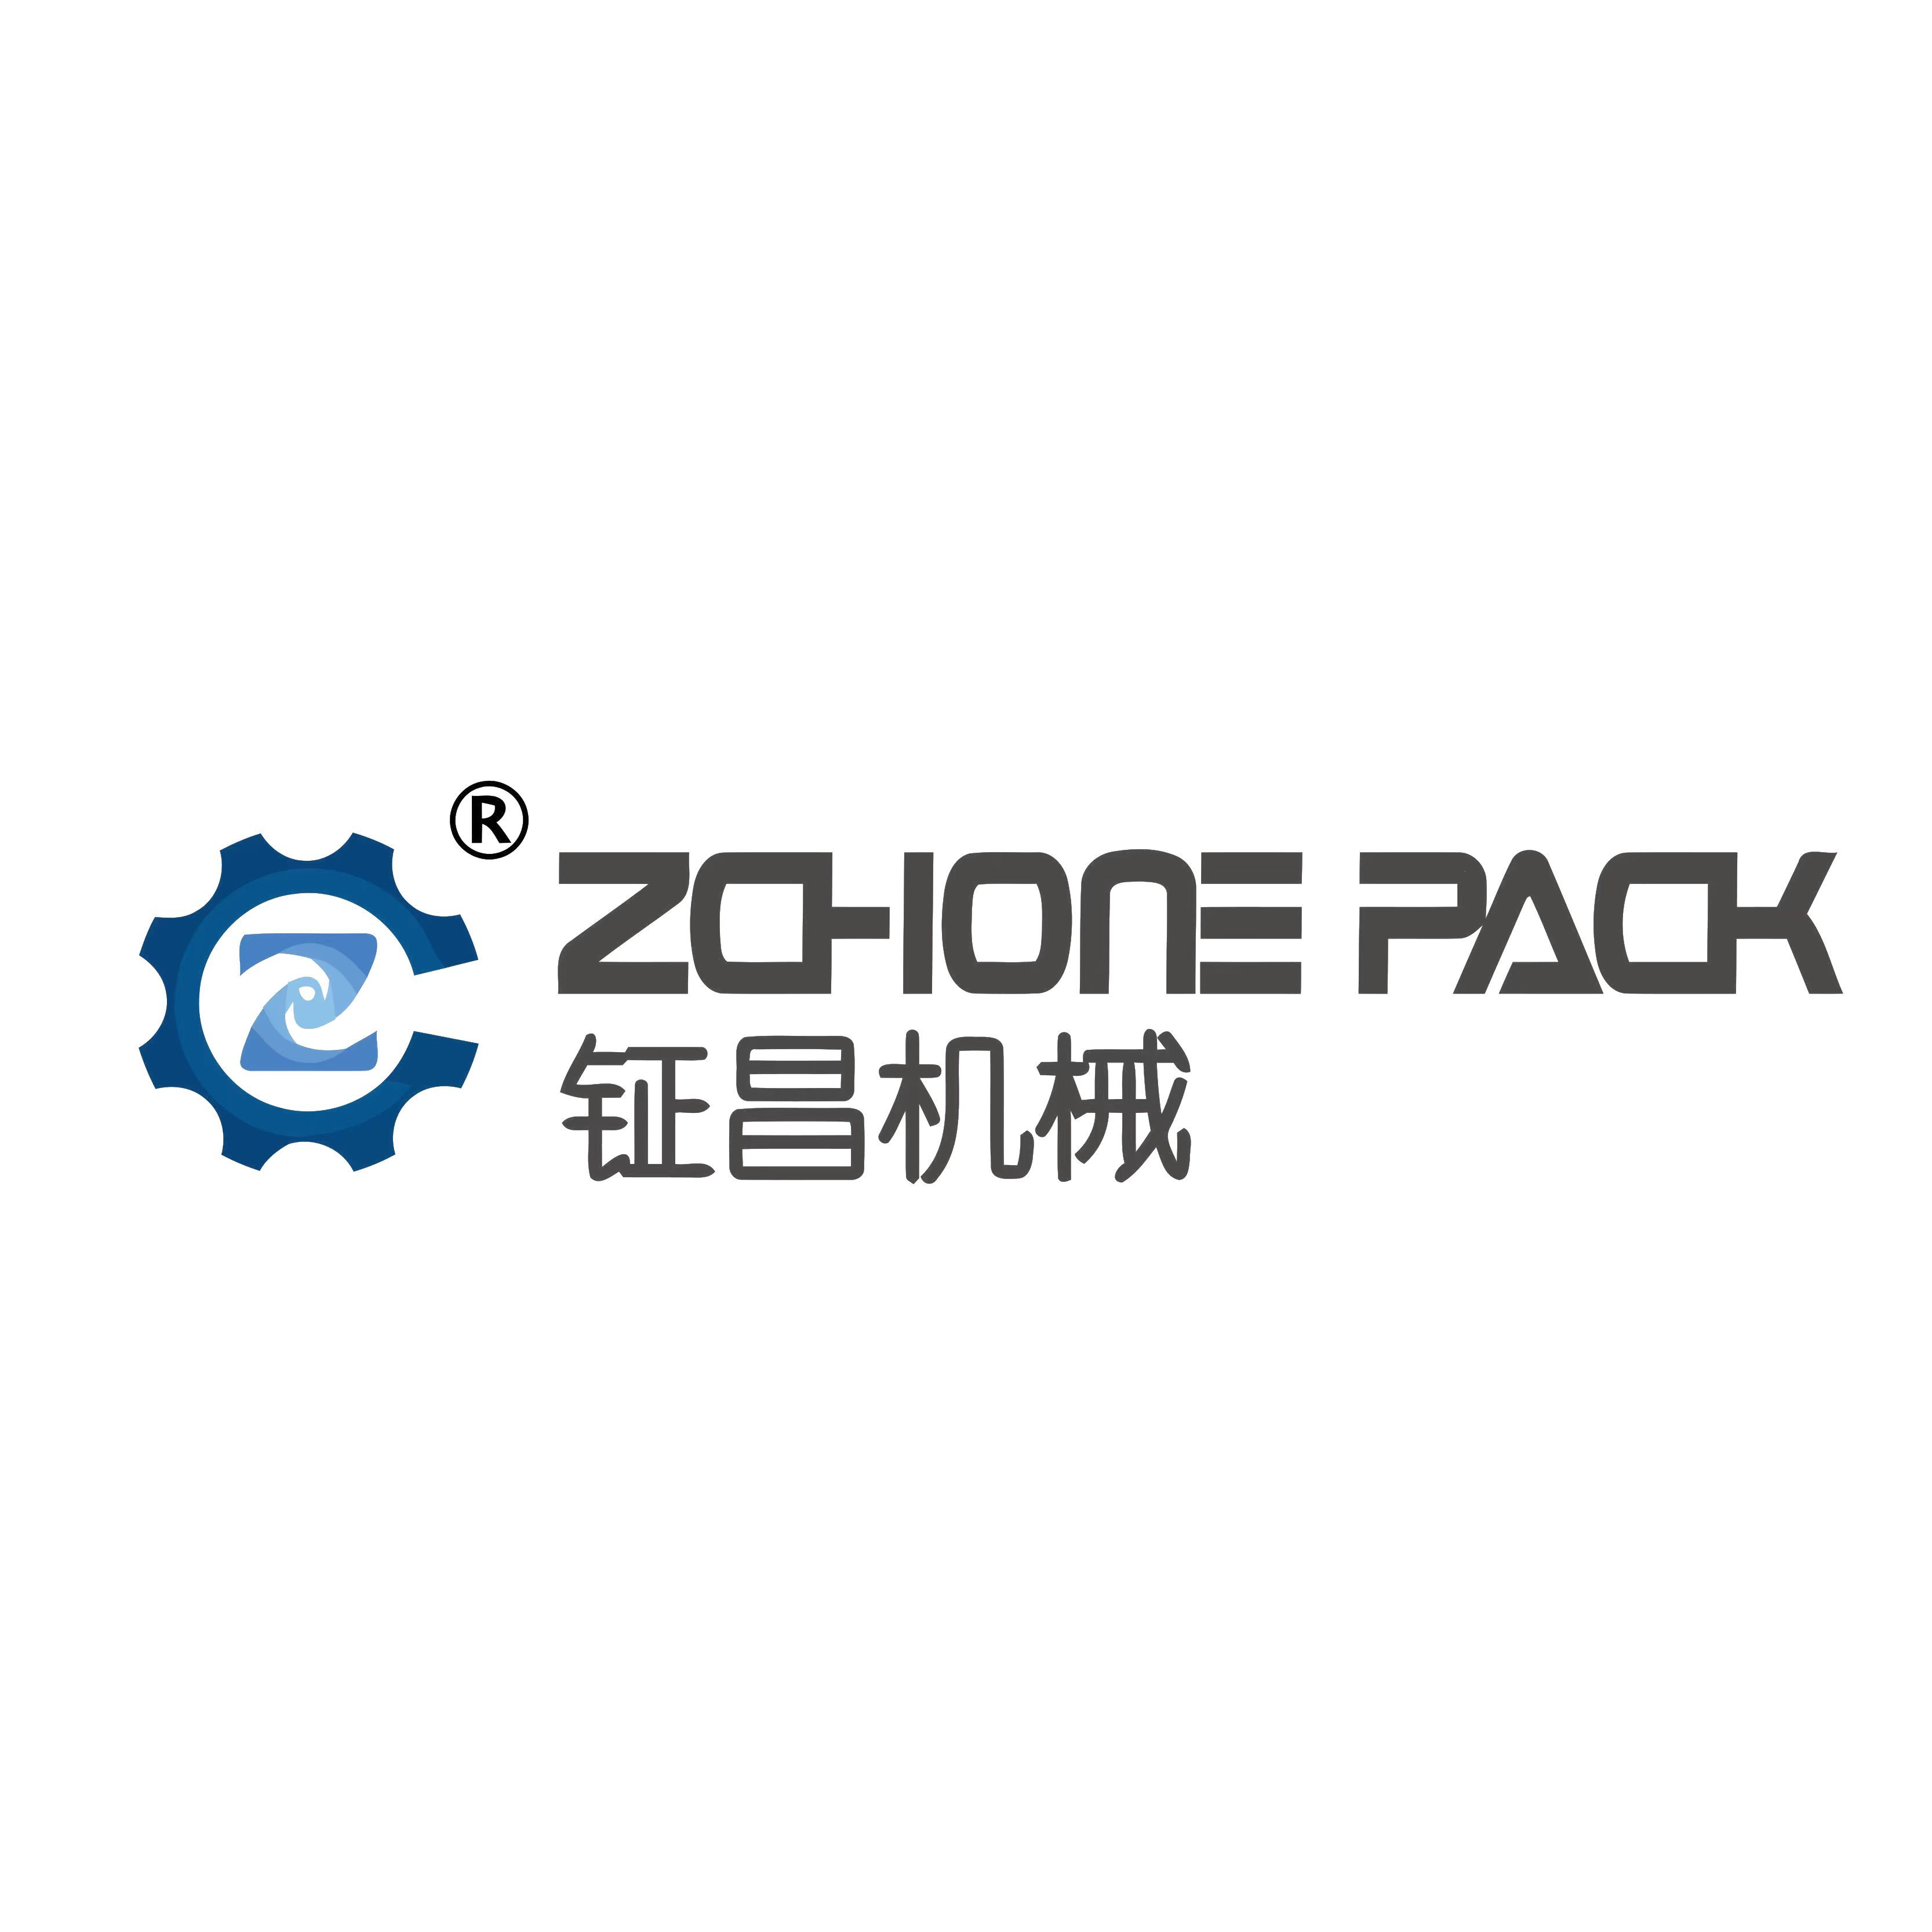 Foshan Zchone Pack Machinery